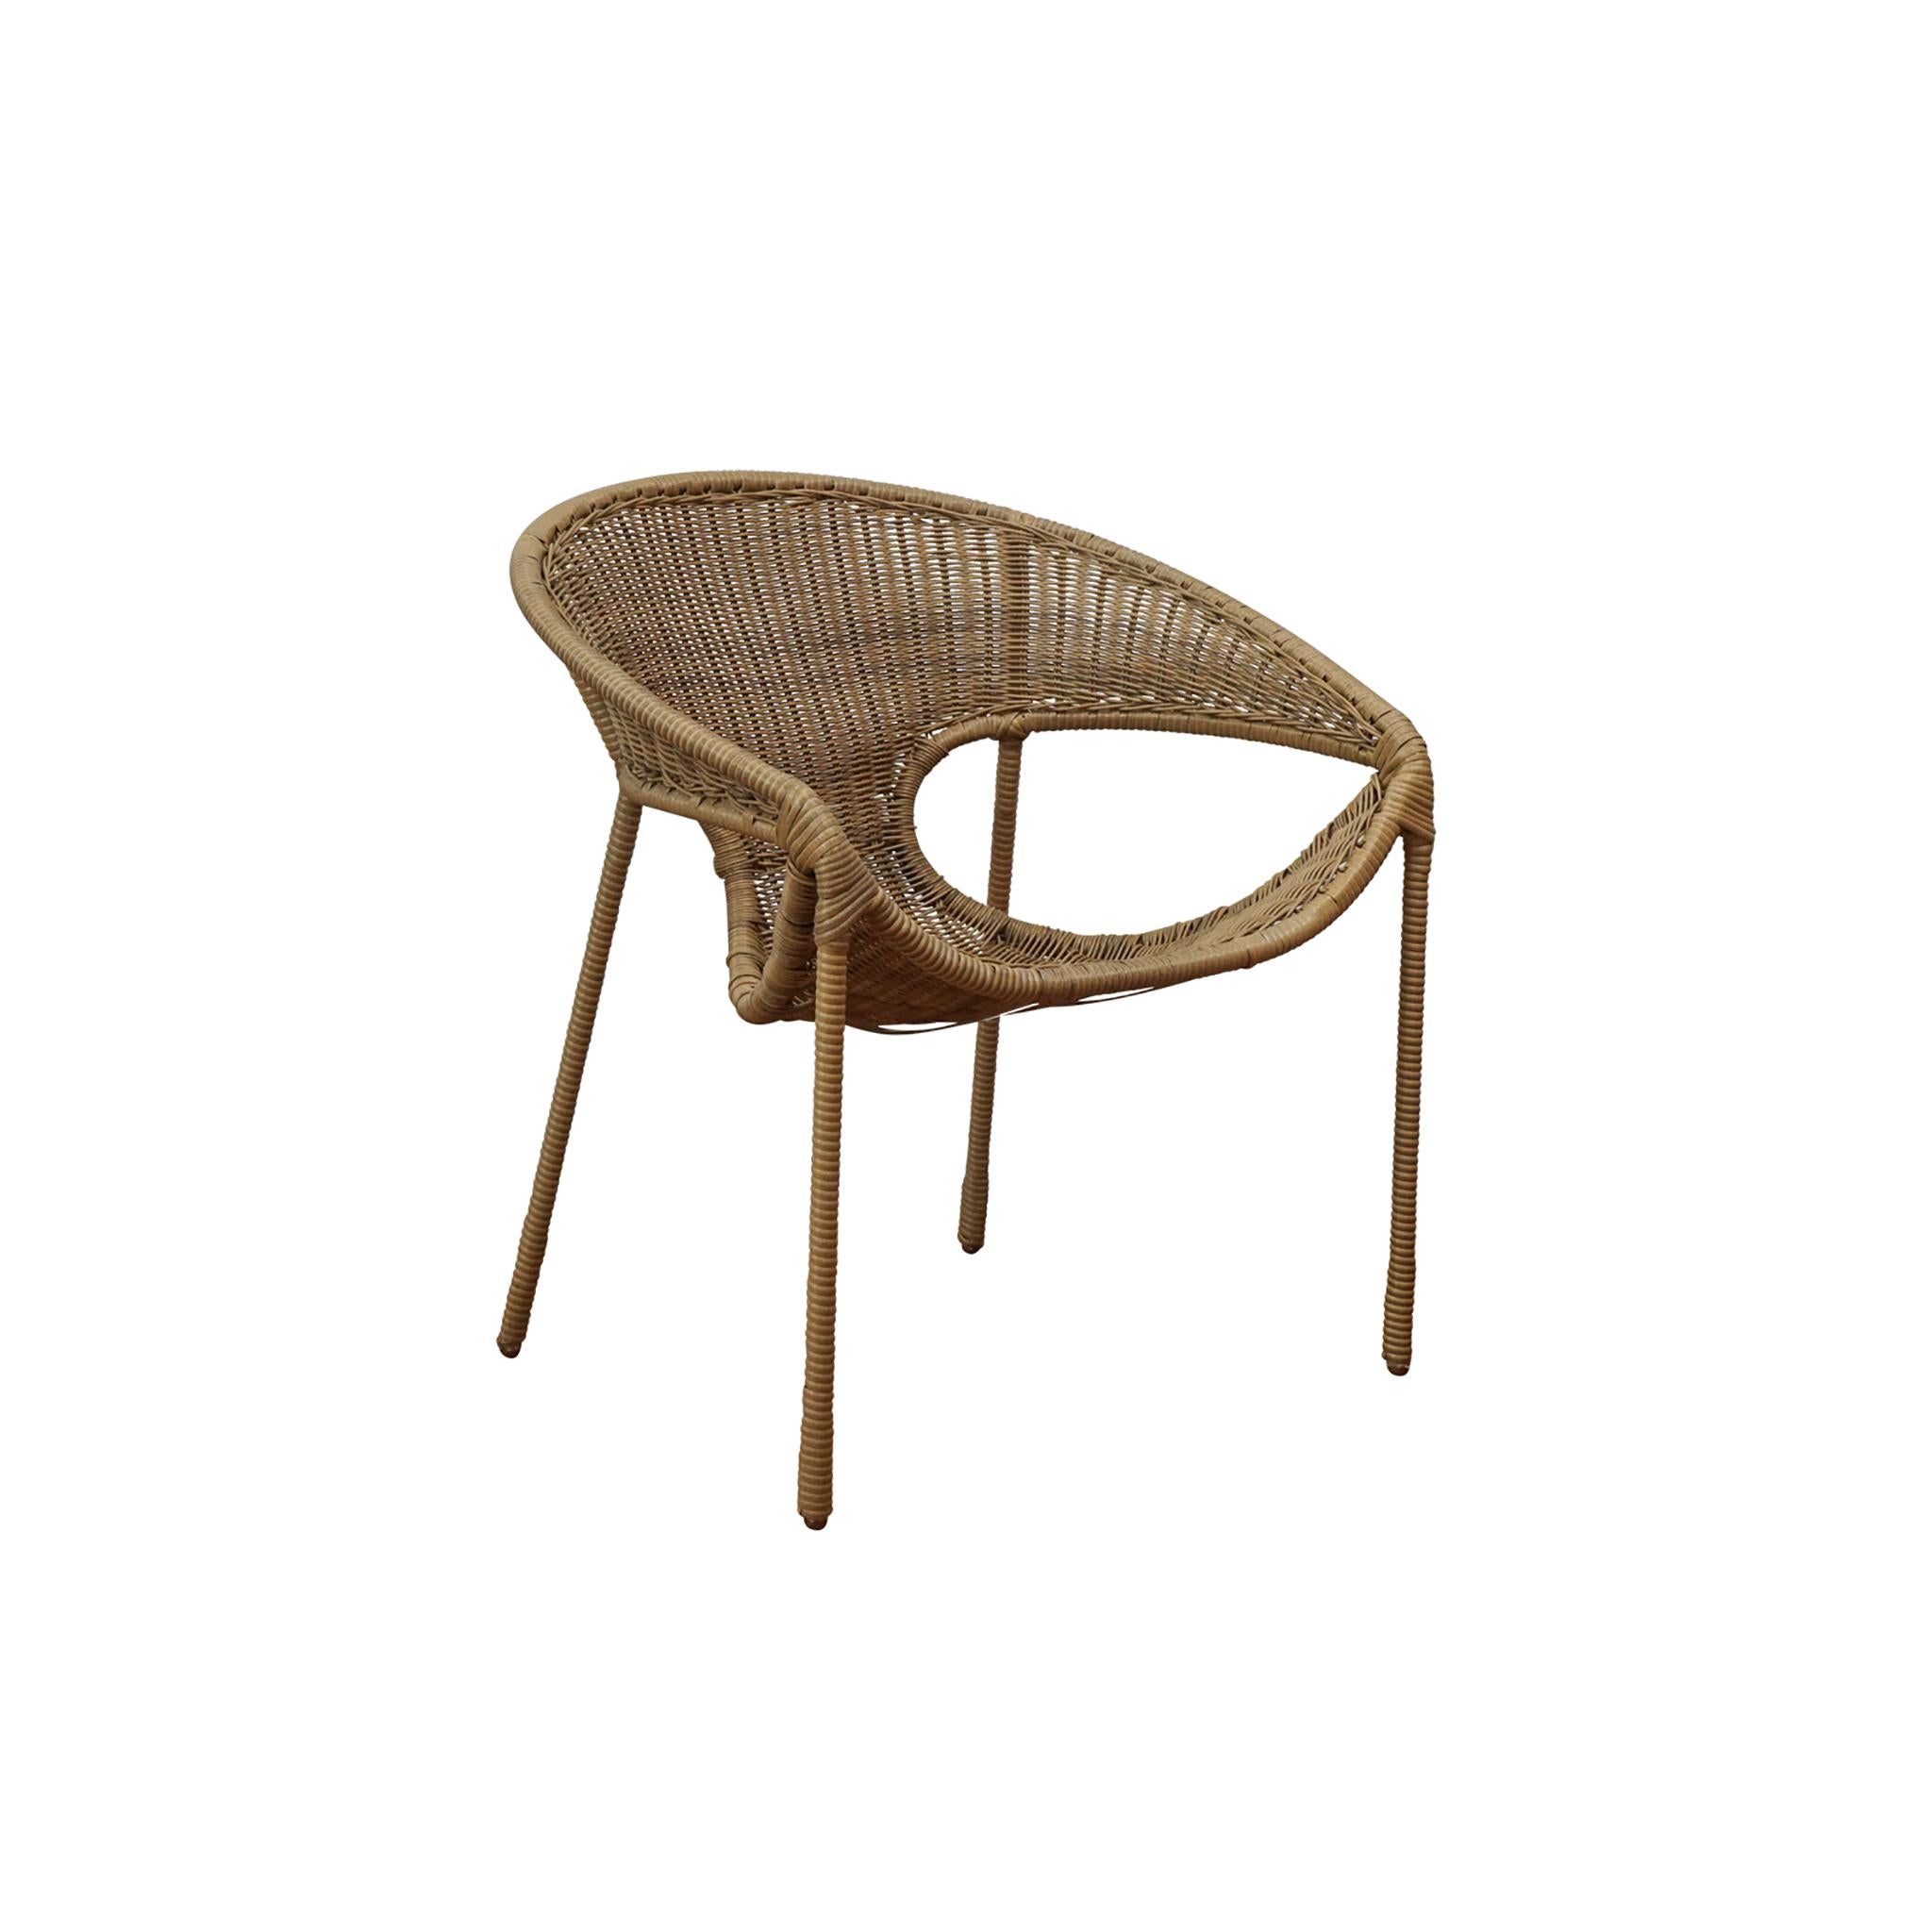 Der Tulum-Esszimmerstuhl wurde vom klassischen Miller Fong-Stuhl inspiriert und für die Verwendung im Freien und den Komfort aktualisiert. Der Stuhl besteht aus einem Metallrahmen und einem Sitz aus gewebtem Polypropylen. Die großzügigen, für den